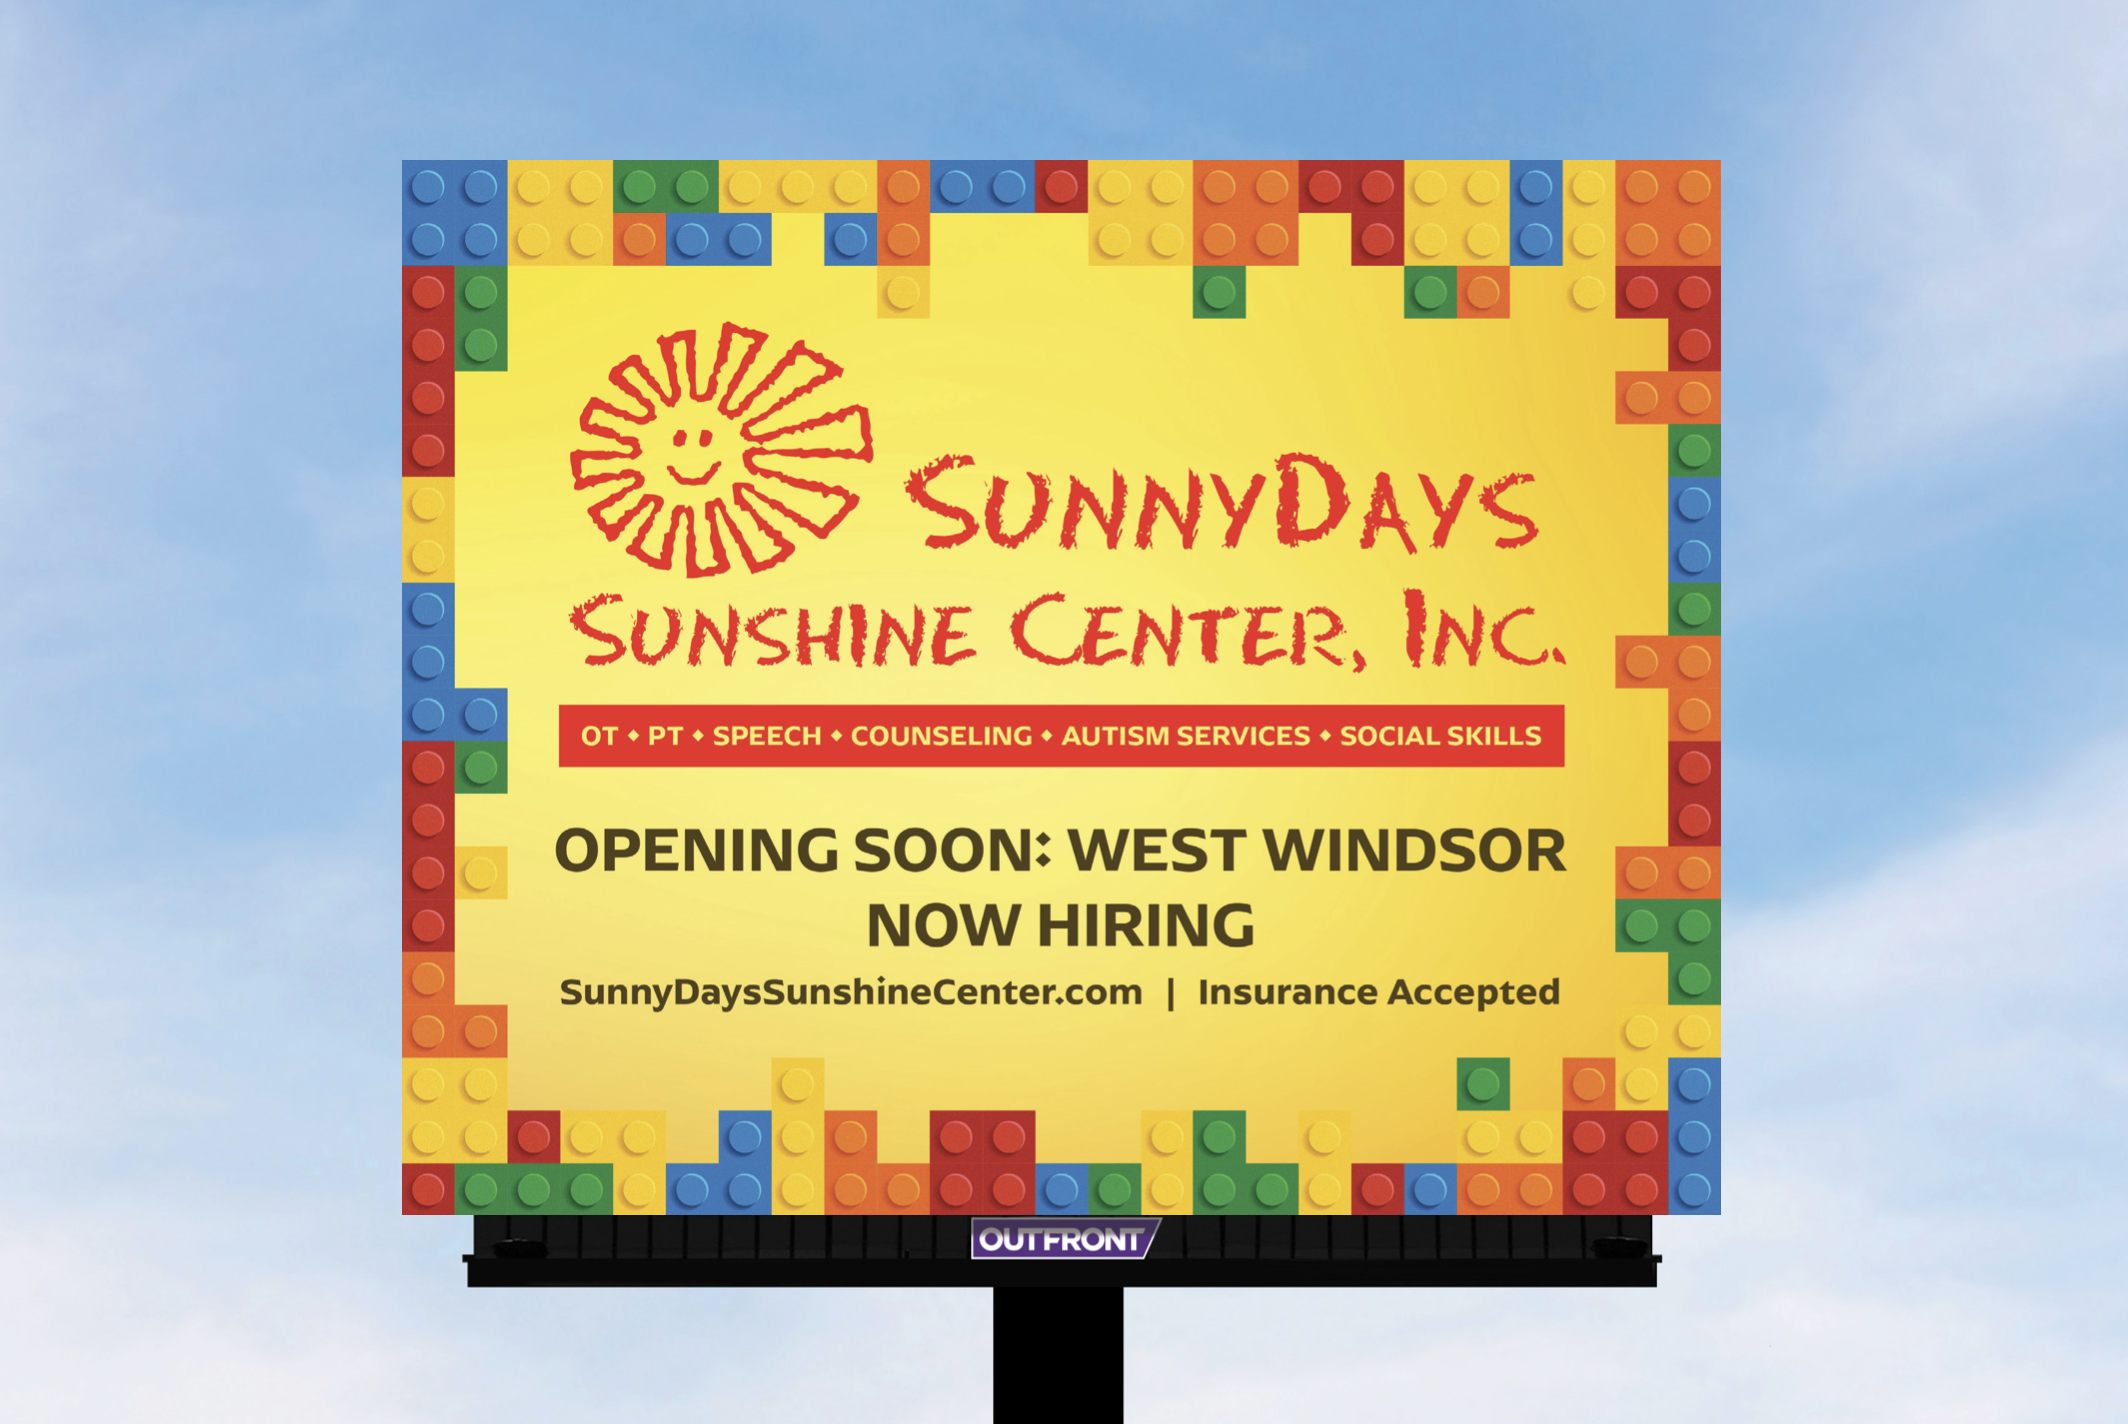 West Windsor Opening Soon Billboard